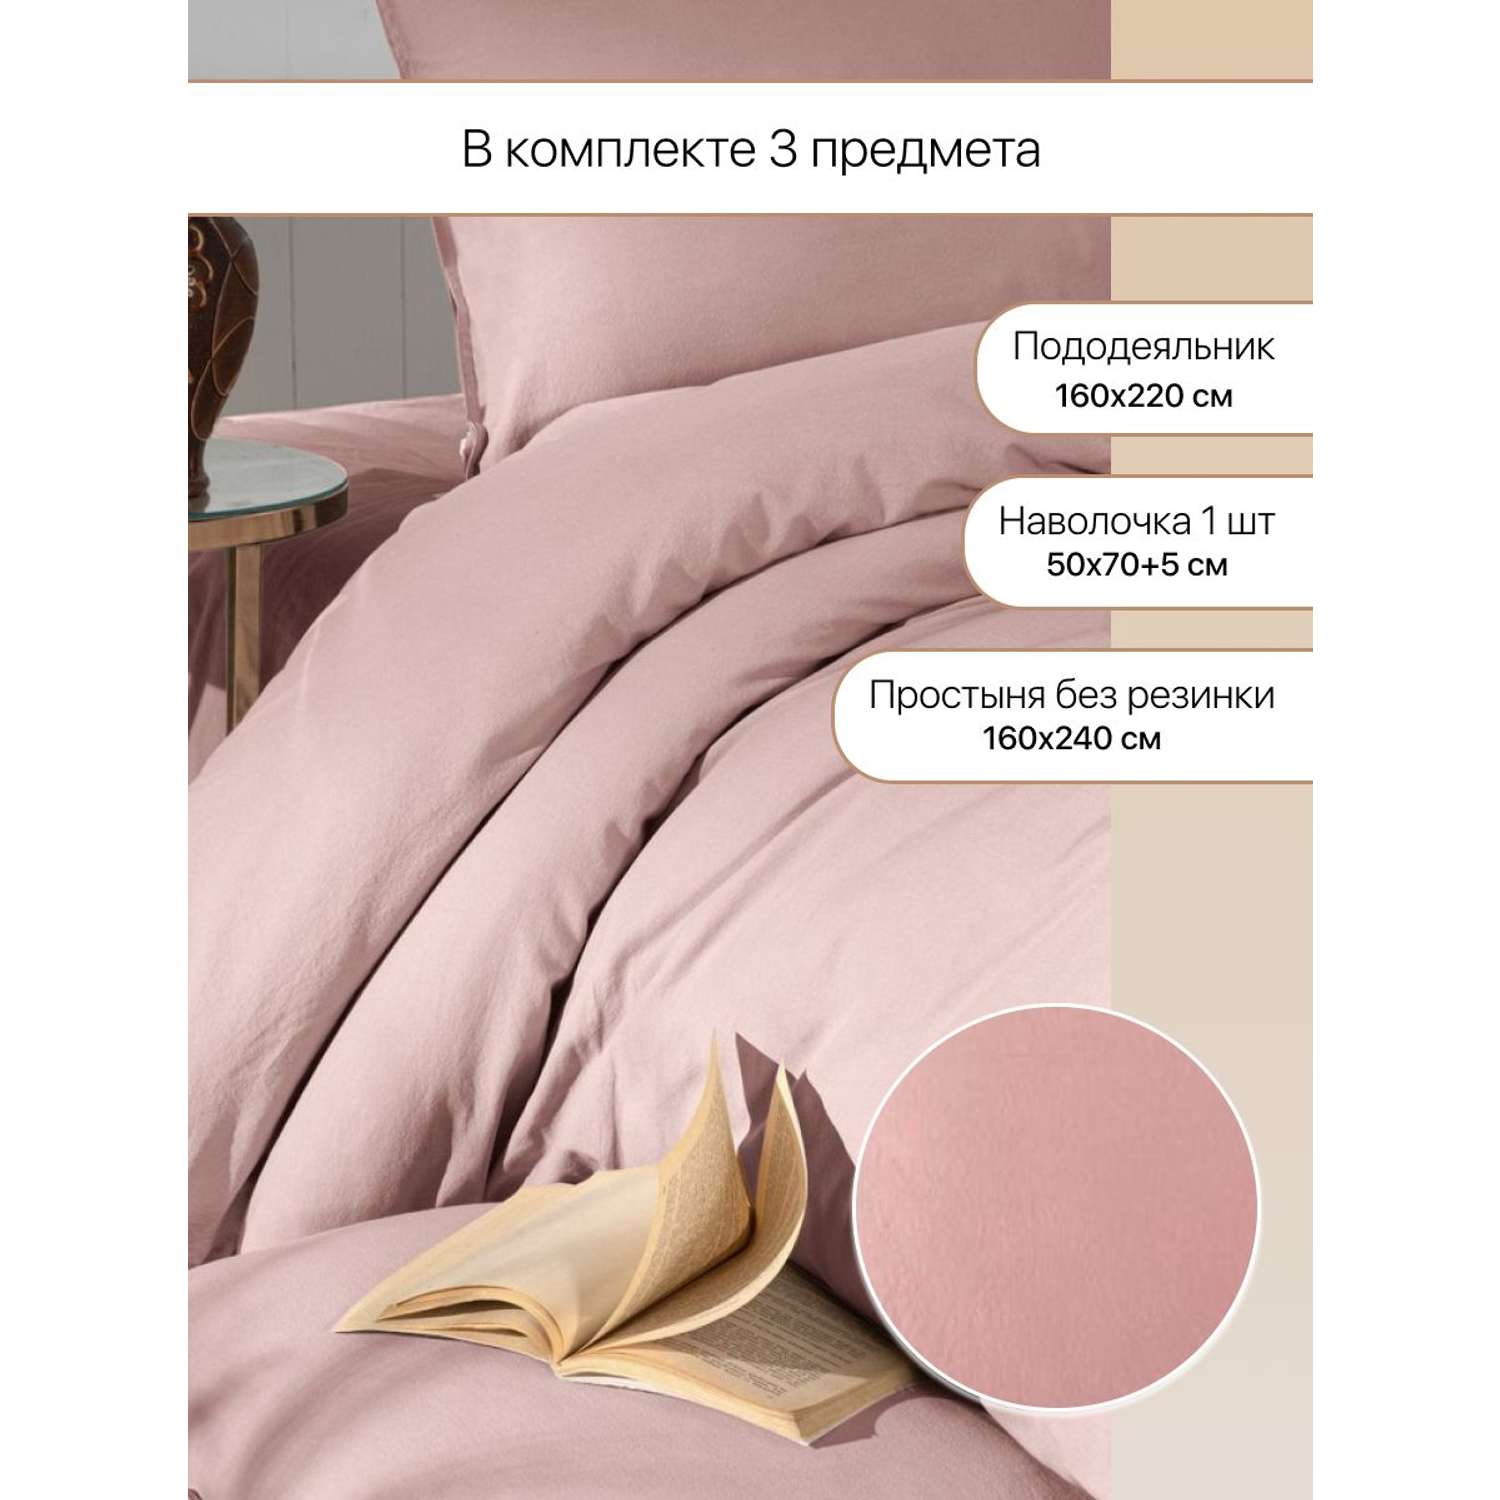 Комплект постельного белья Arya Home Collection Natural Stone Washed 160x220 розовый - фото 2